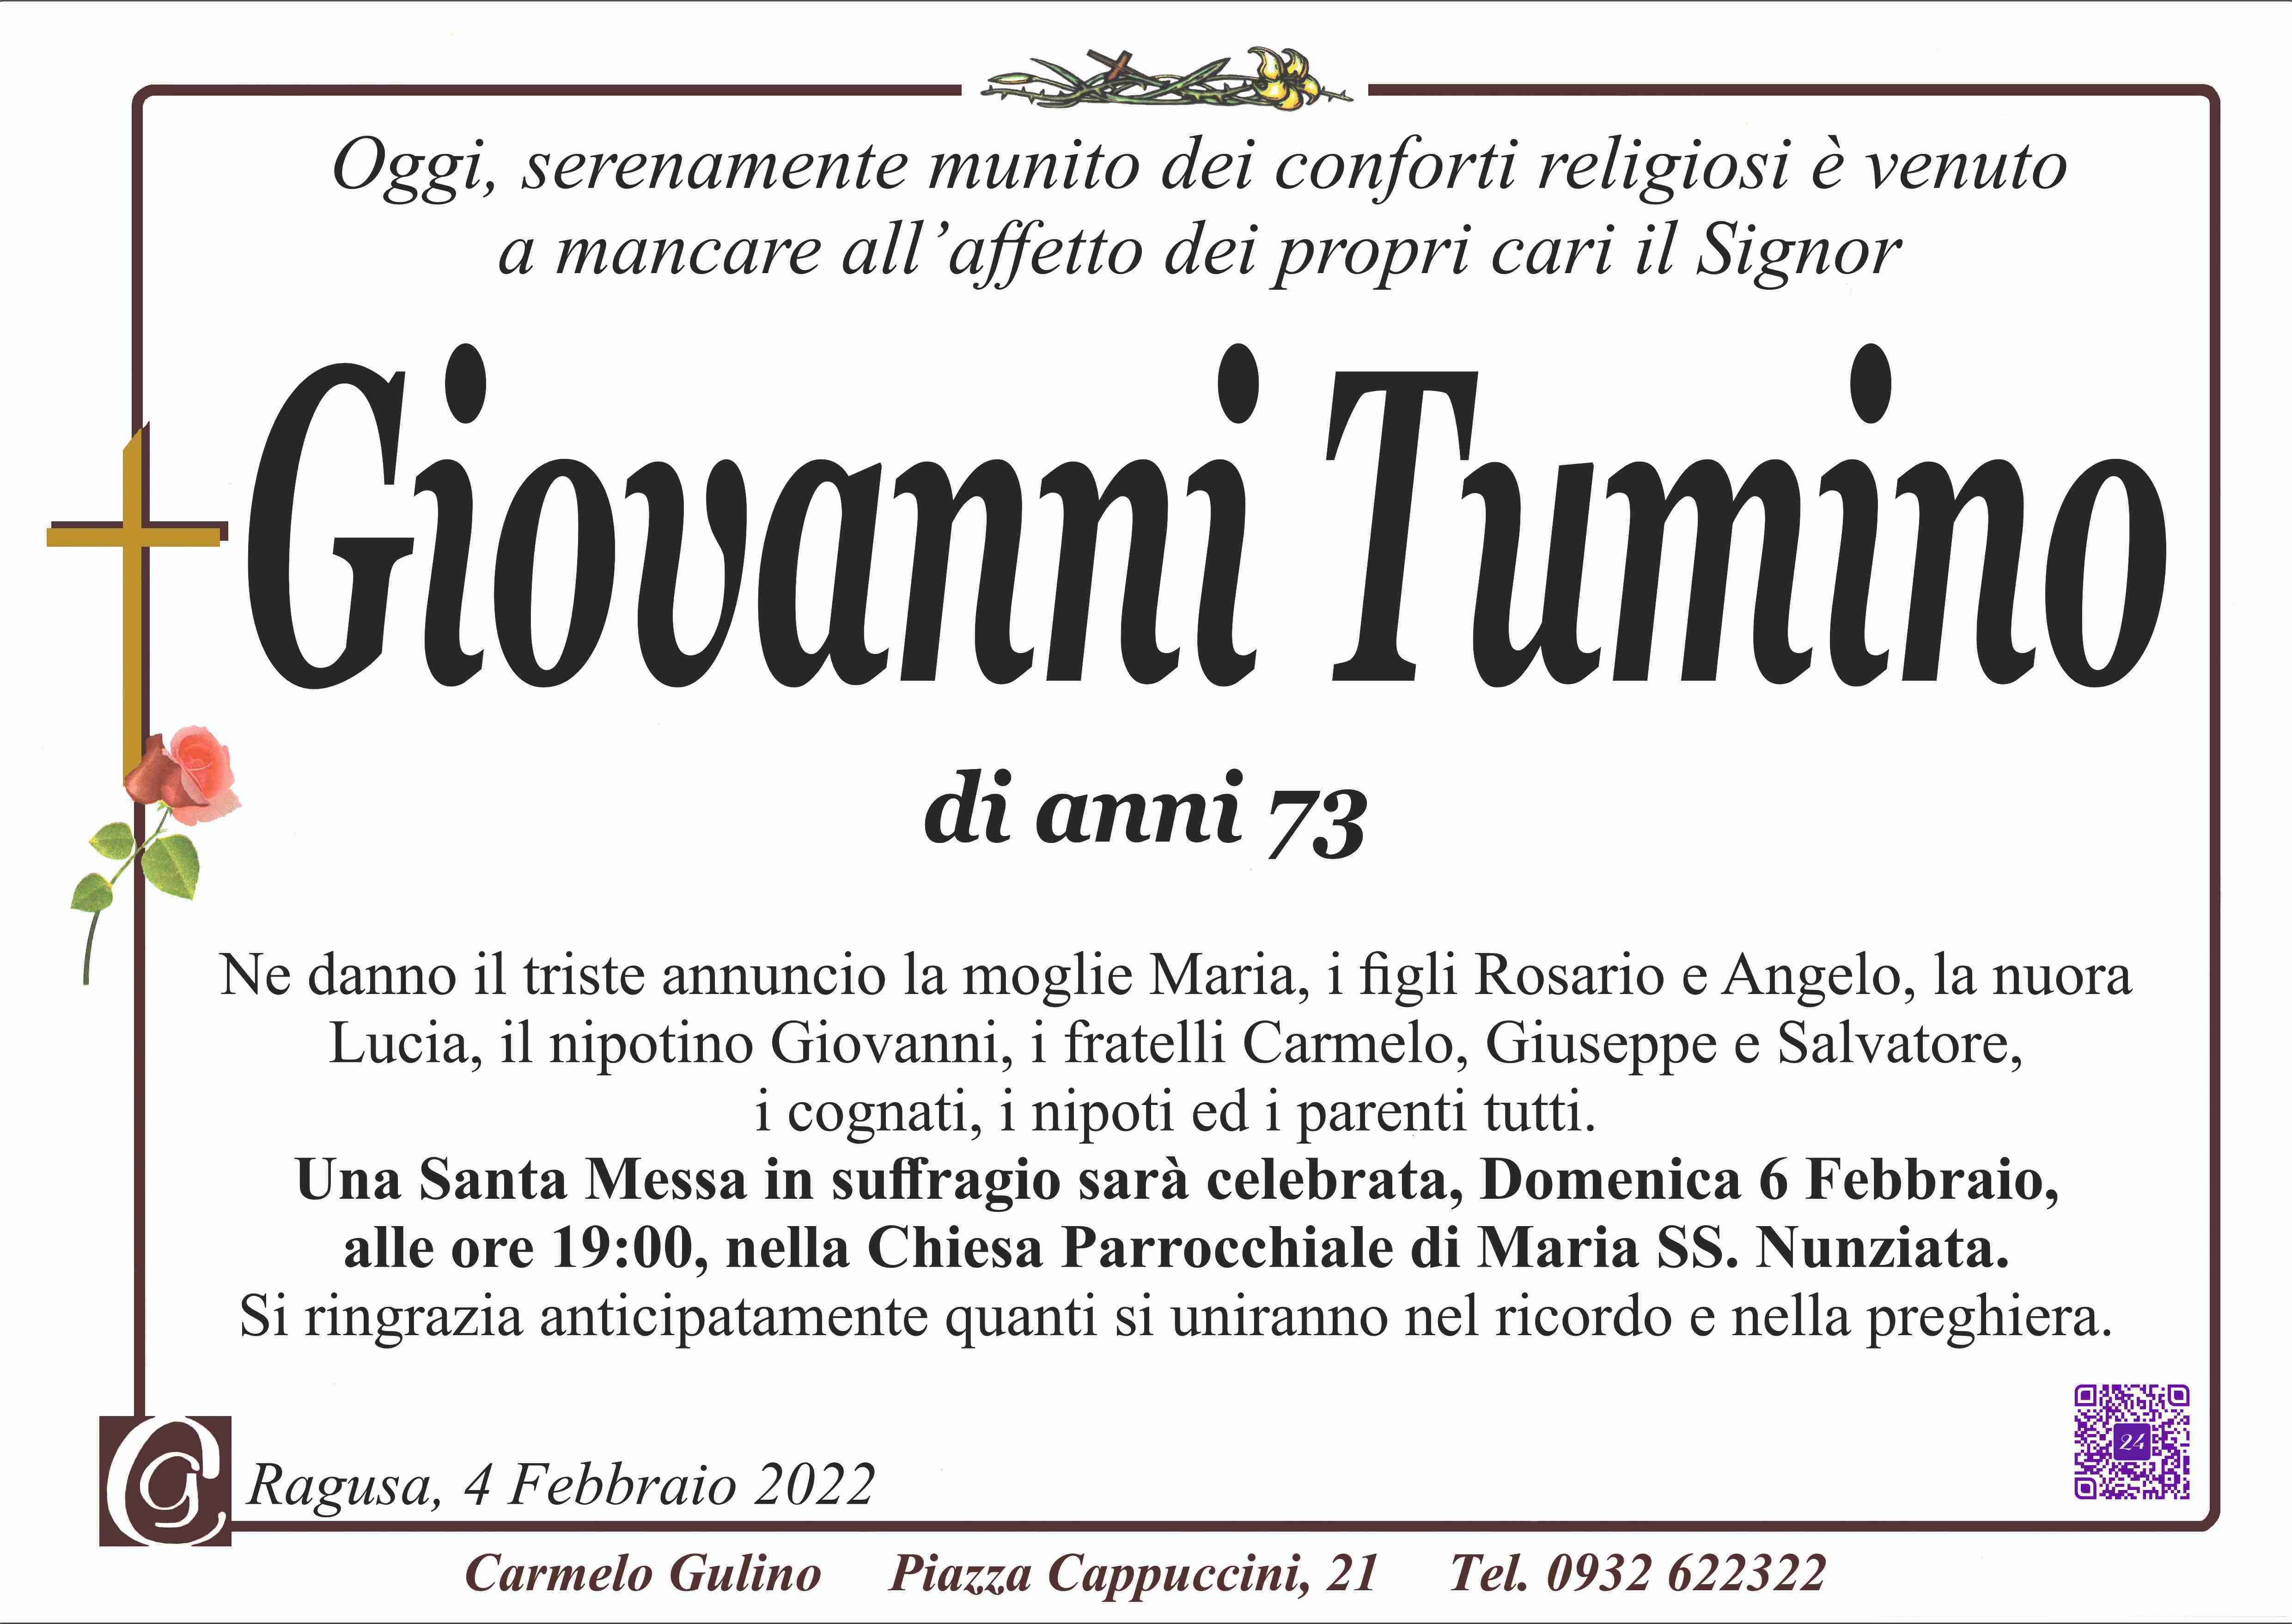 Giovanni Tumino